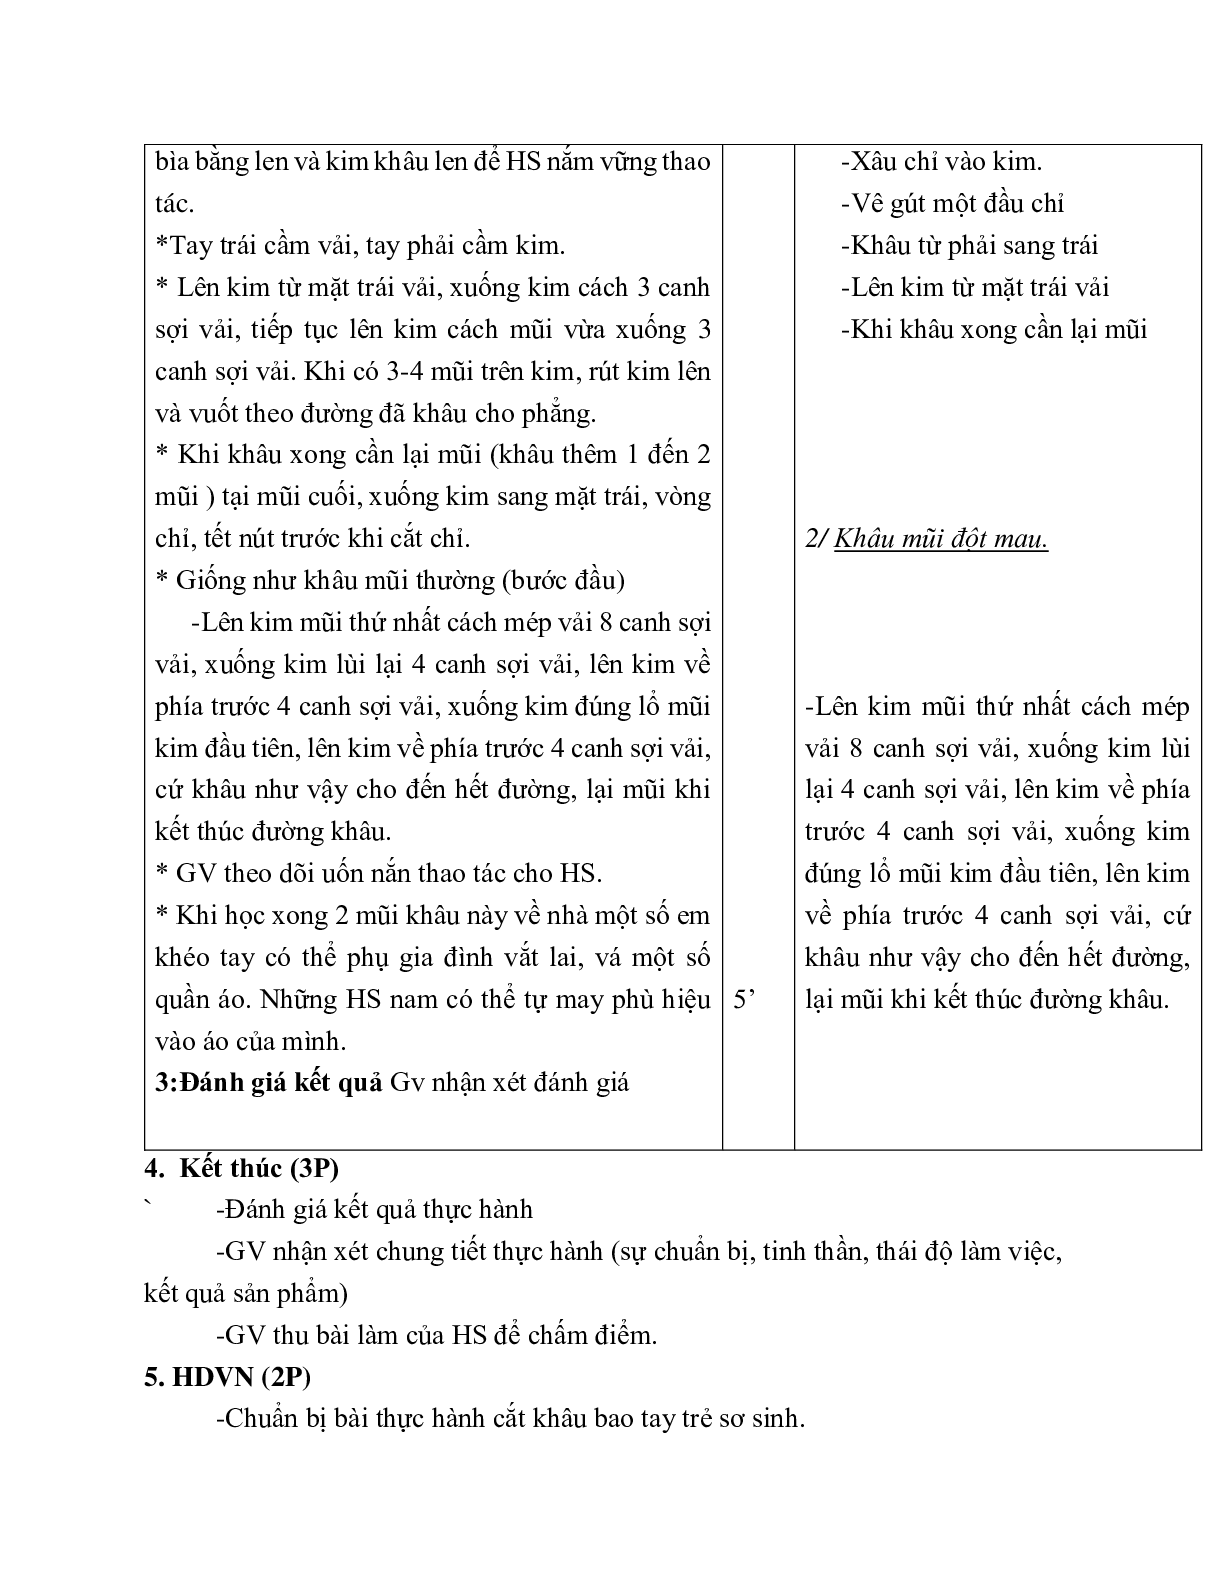 GIÁO ÁN CÔNG NGHỆ 6 BÀI 5: THỰC HÀNH ÔN MỘT SỐ MŨI KHÂU CƠ BẢN (T1) MỚI NHẤT – CV5555 (trang 2)